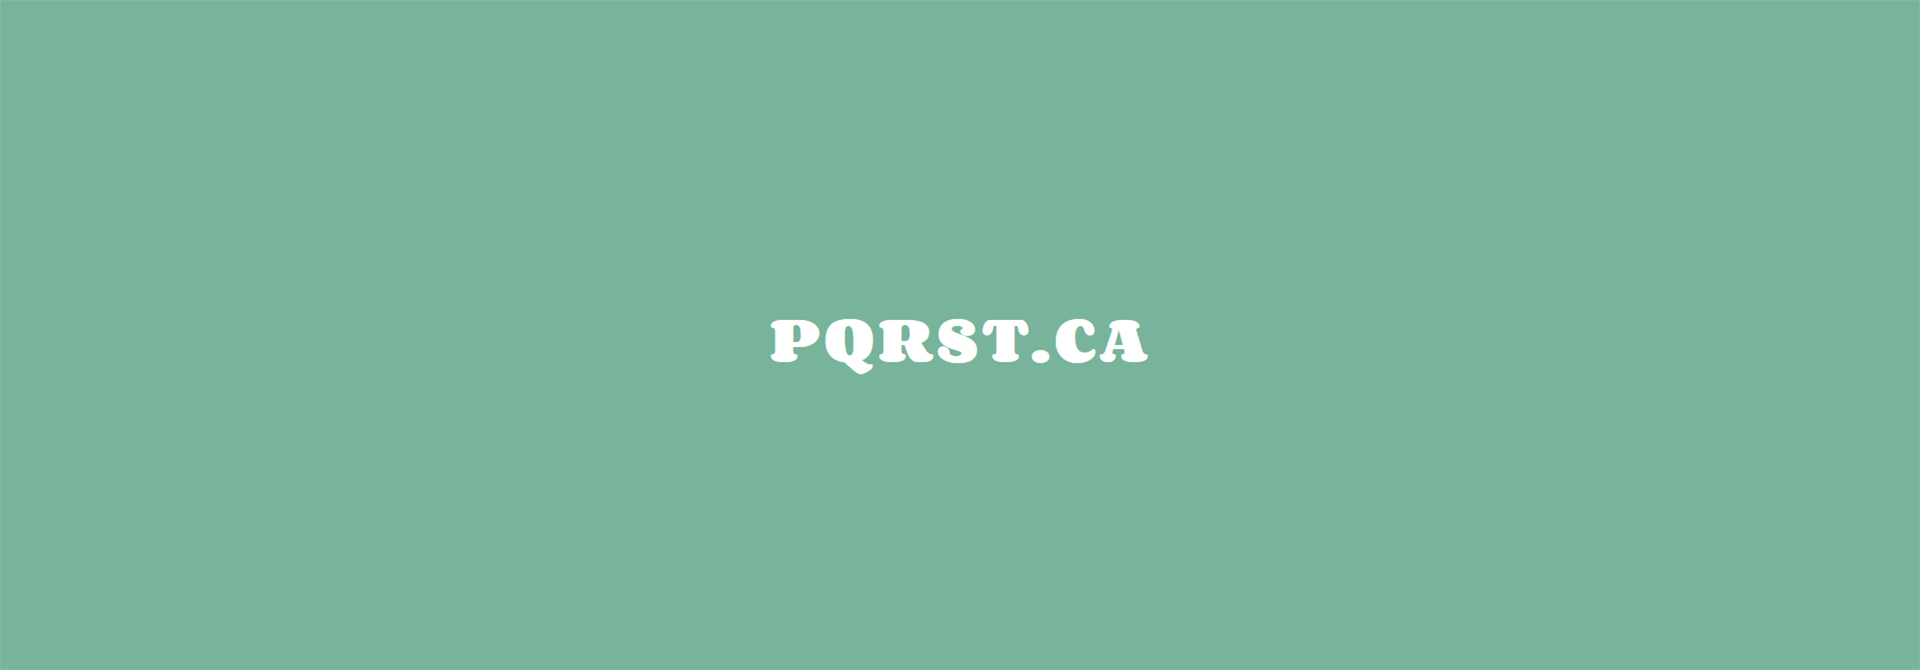 pqrst.ca logo